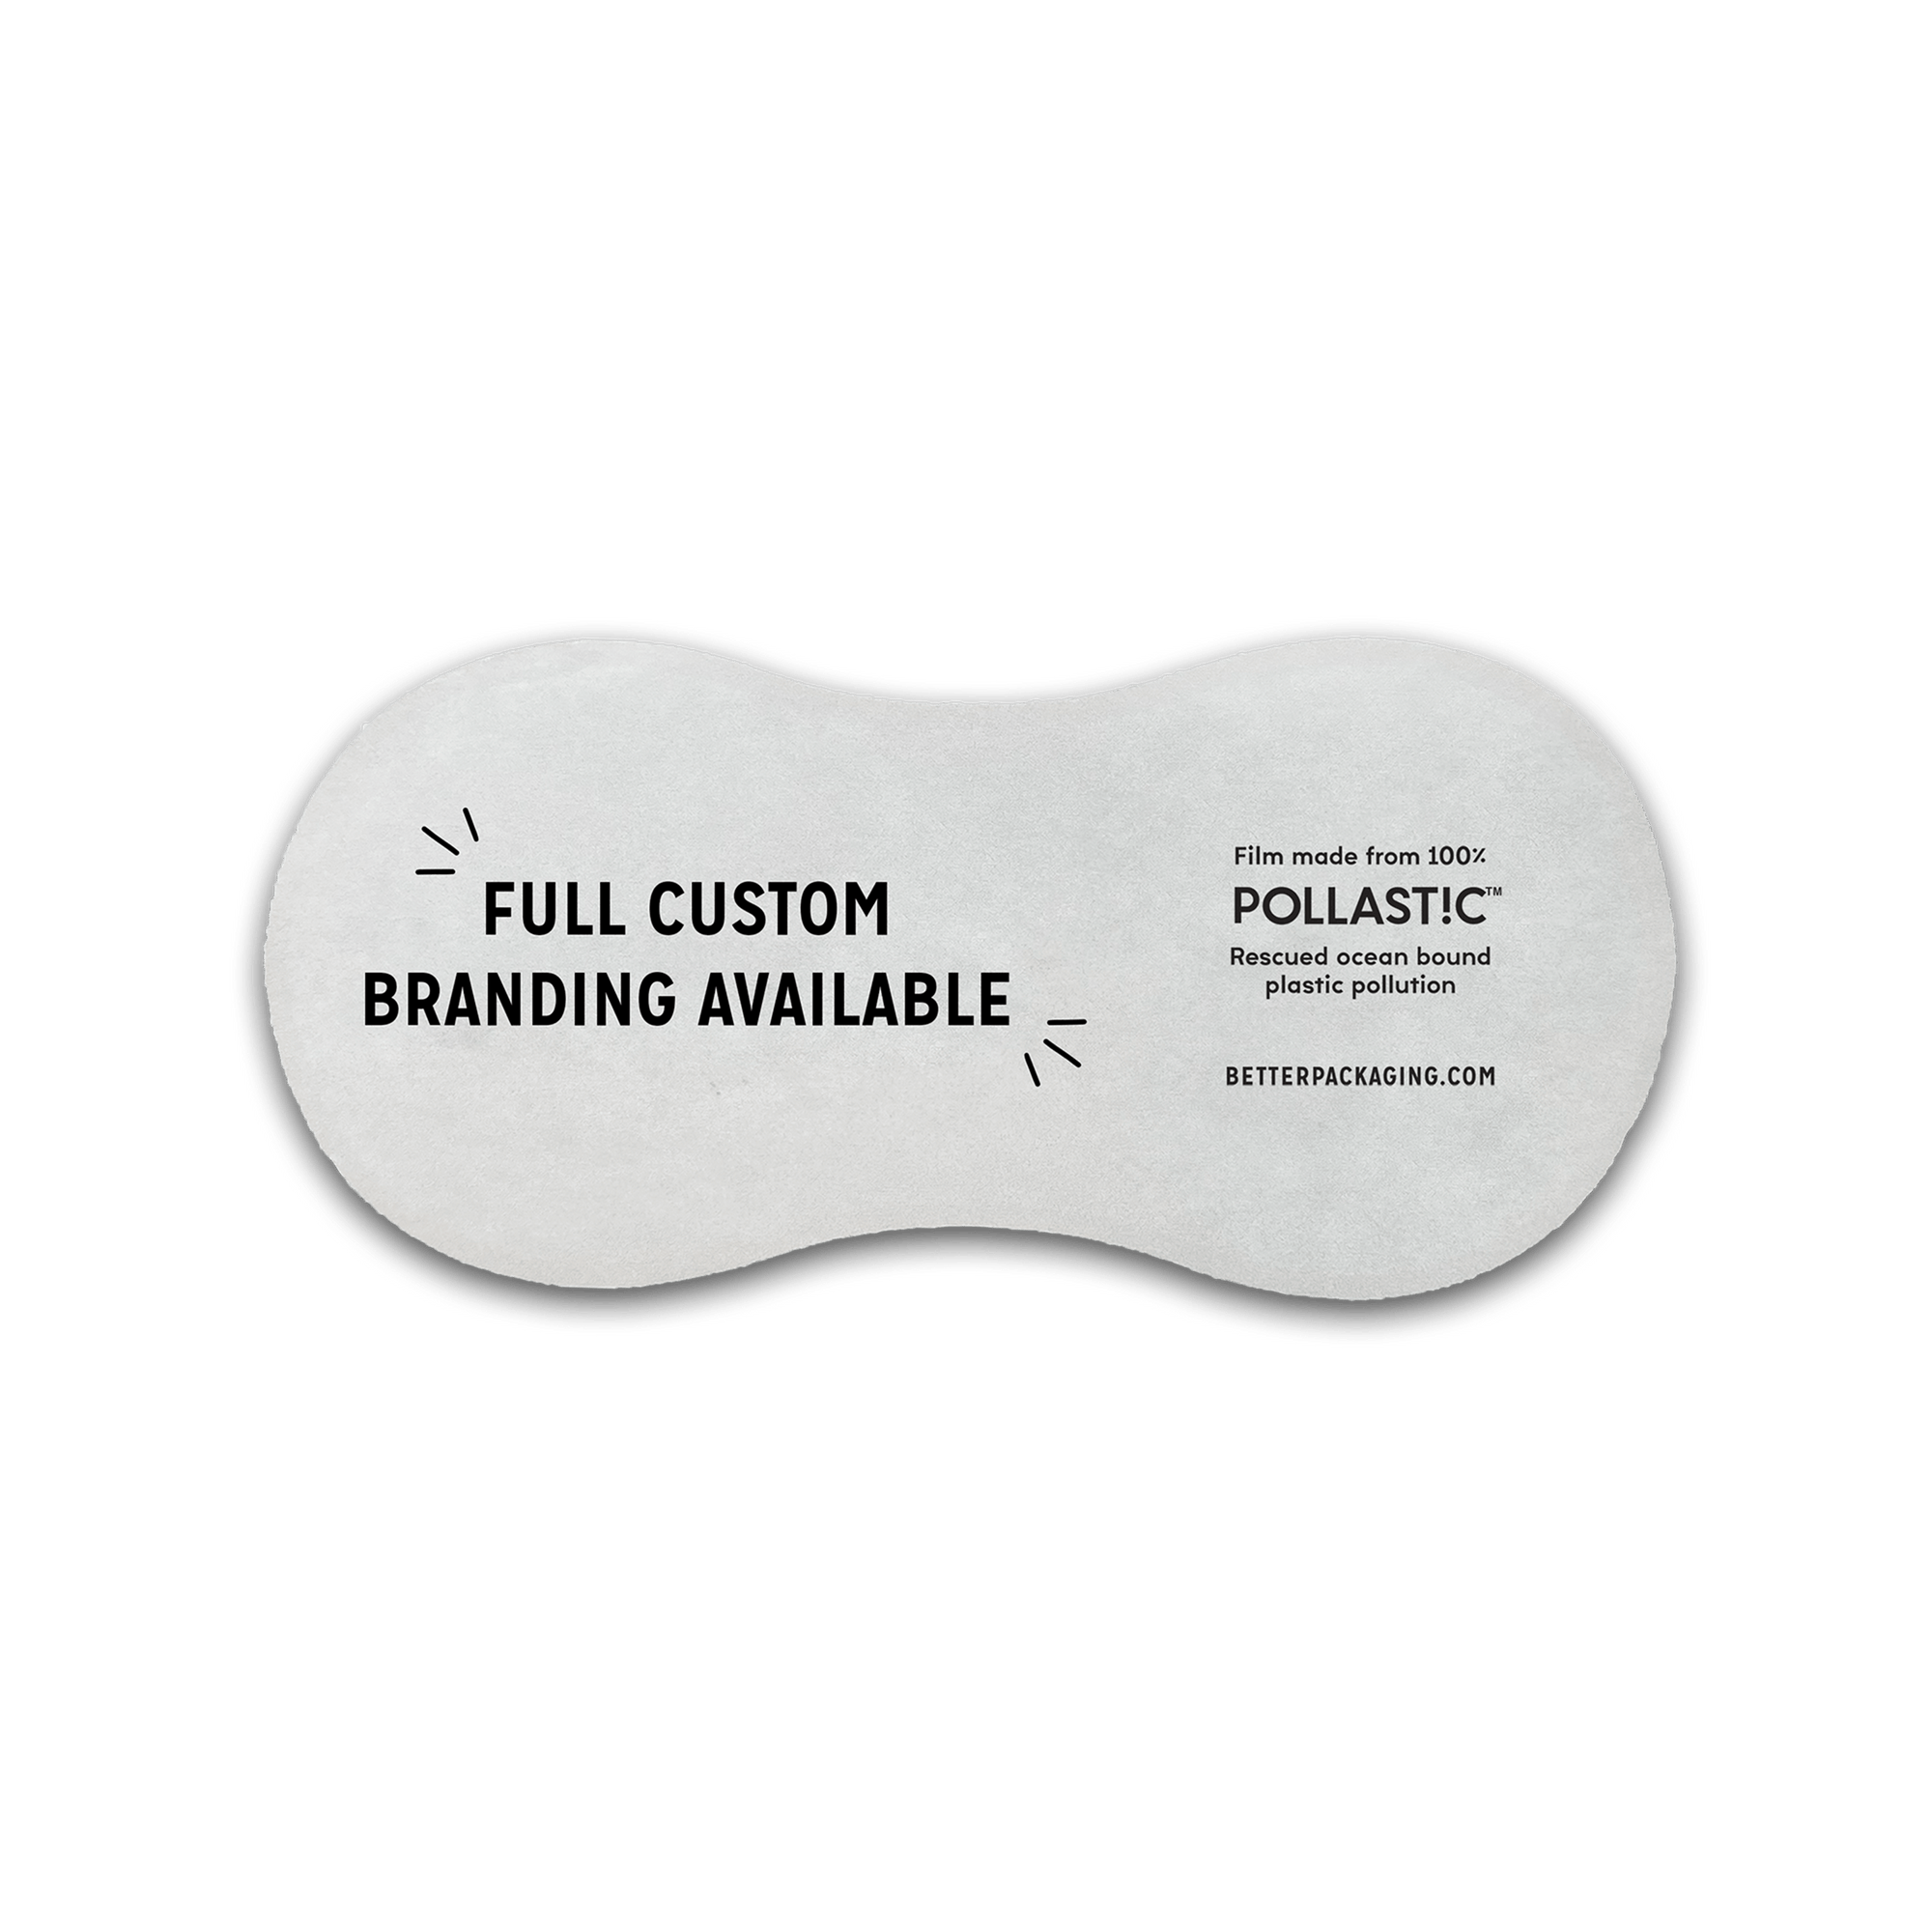 Better Packaging POLLAST!C Hygiene Liner with "Full custom branding available" messaging